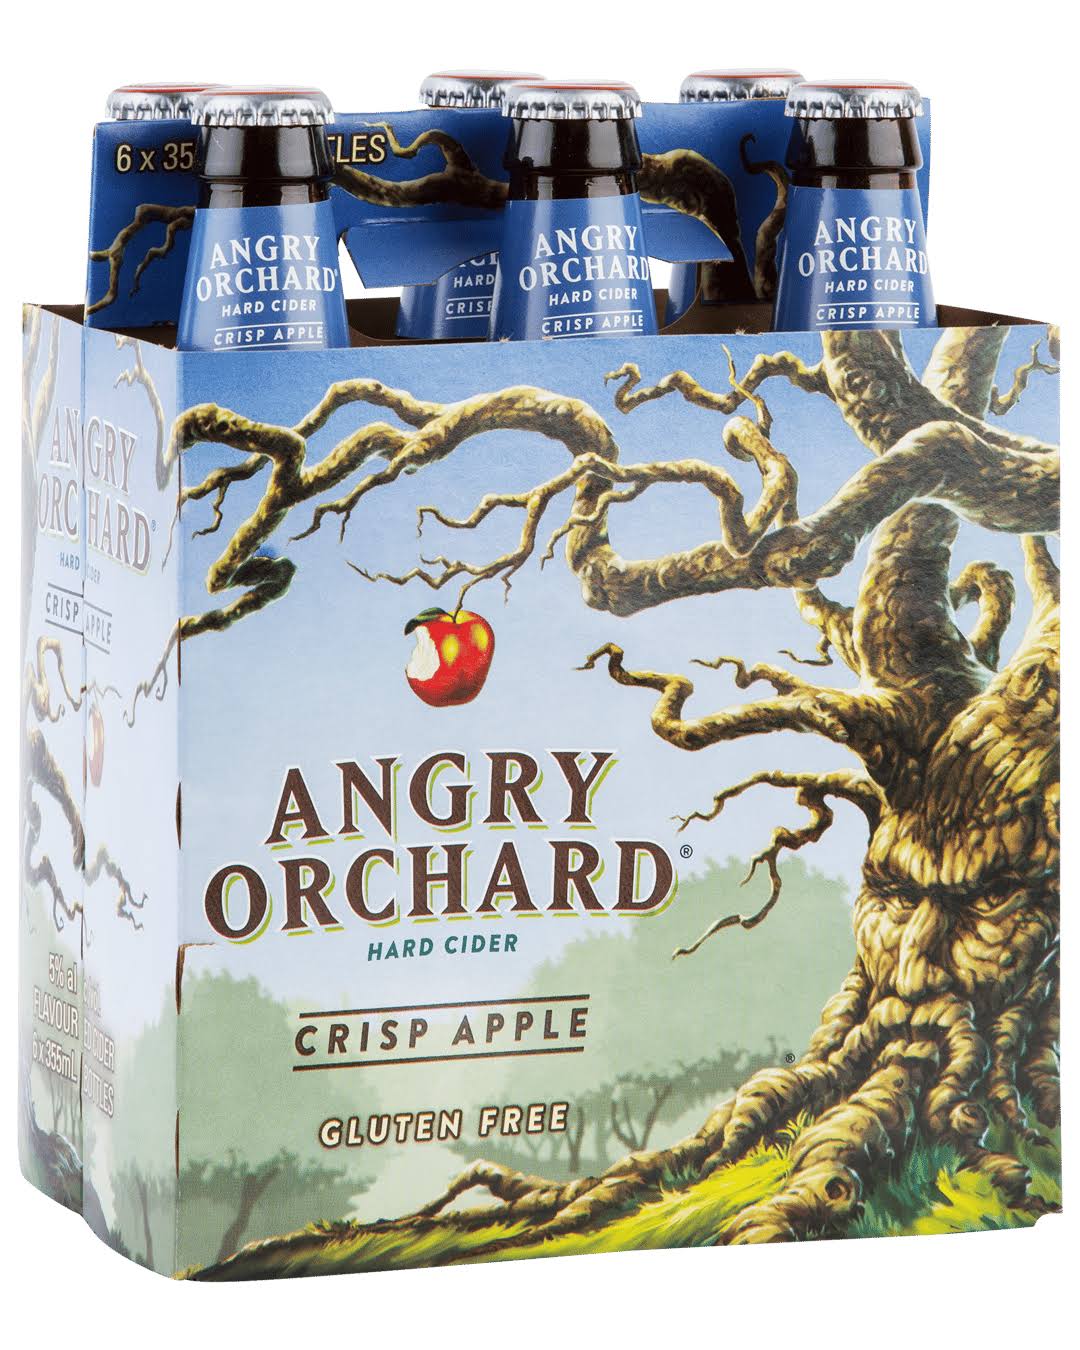 Angry Orchard Hard Cider - Crisp Apple, 6 Pack, 12oz